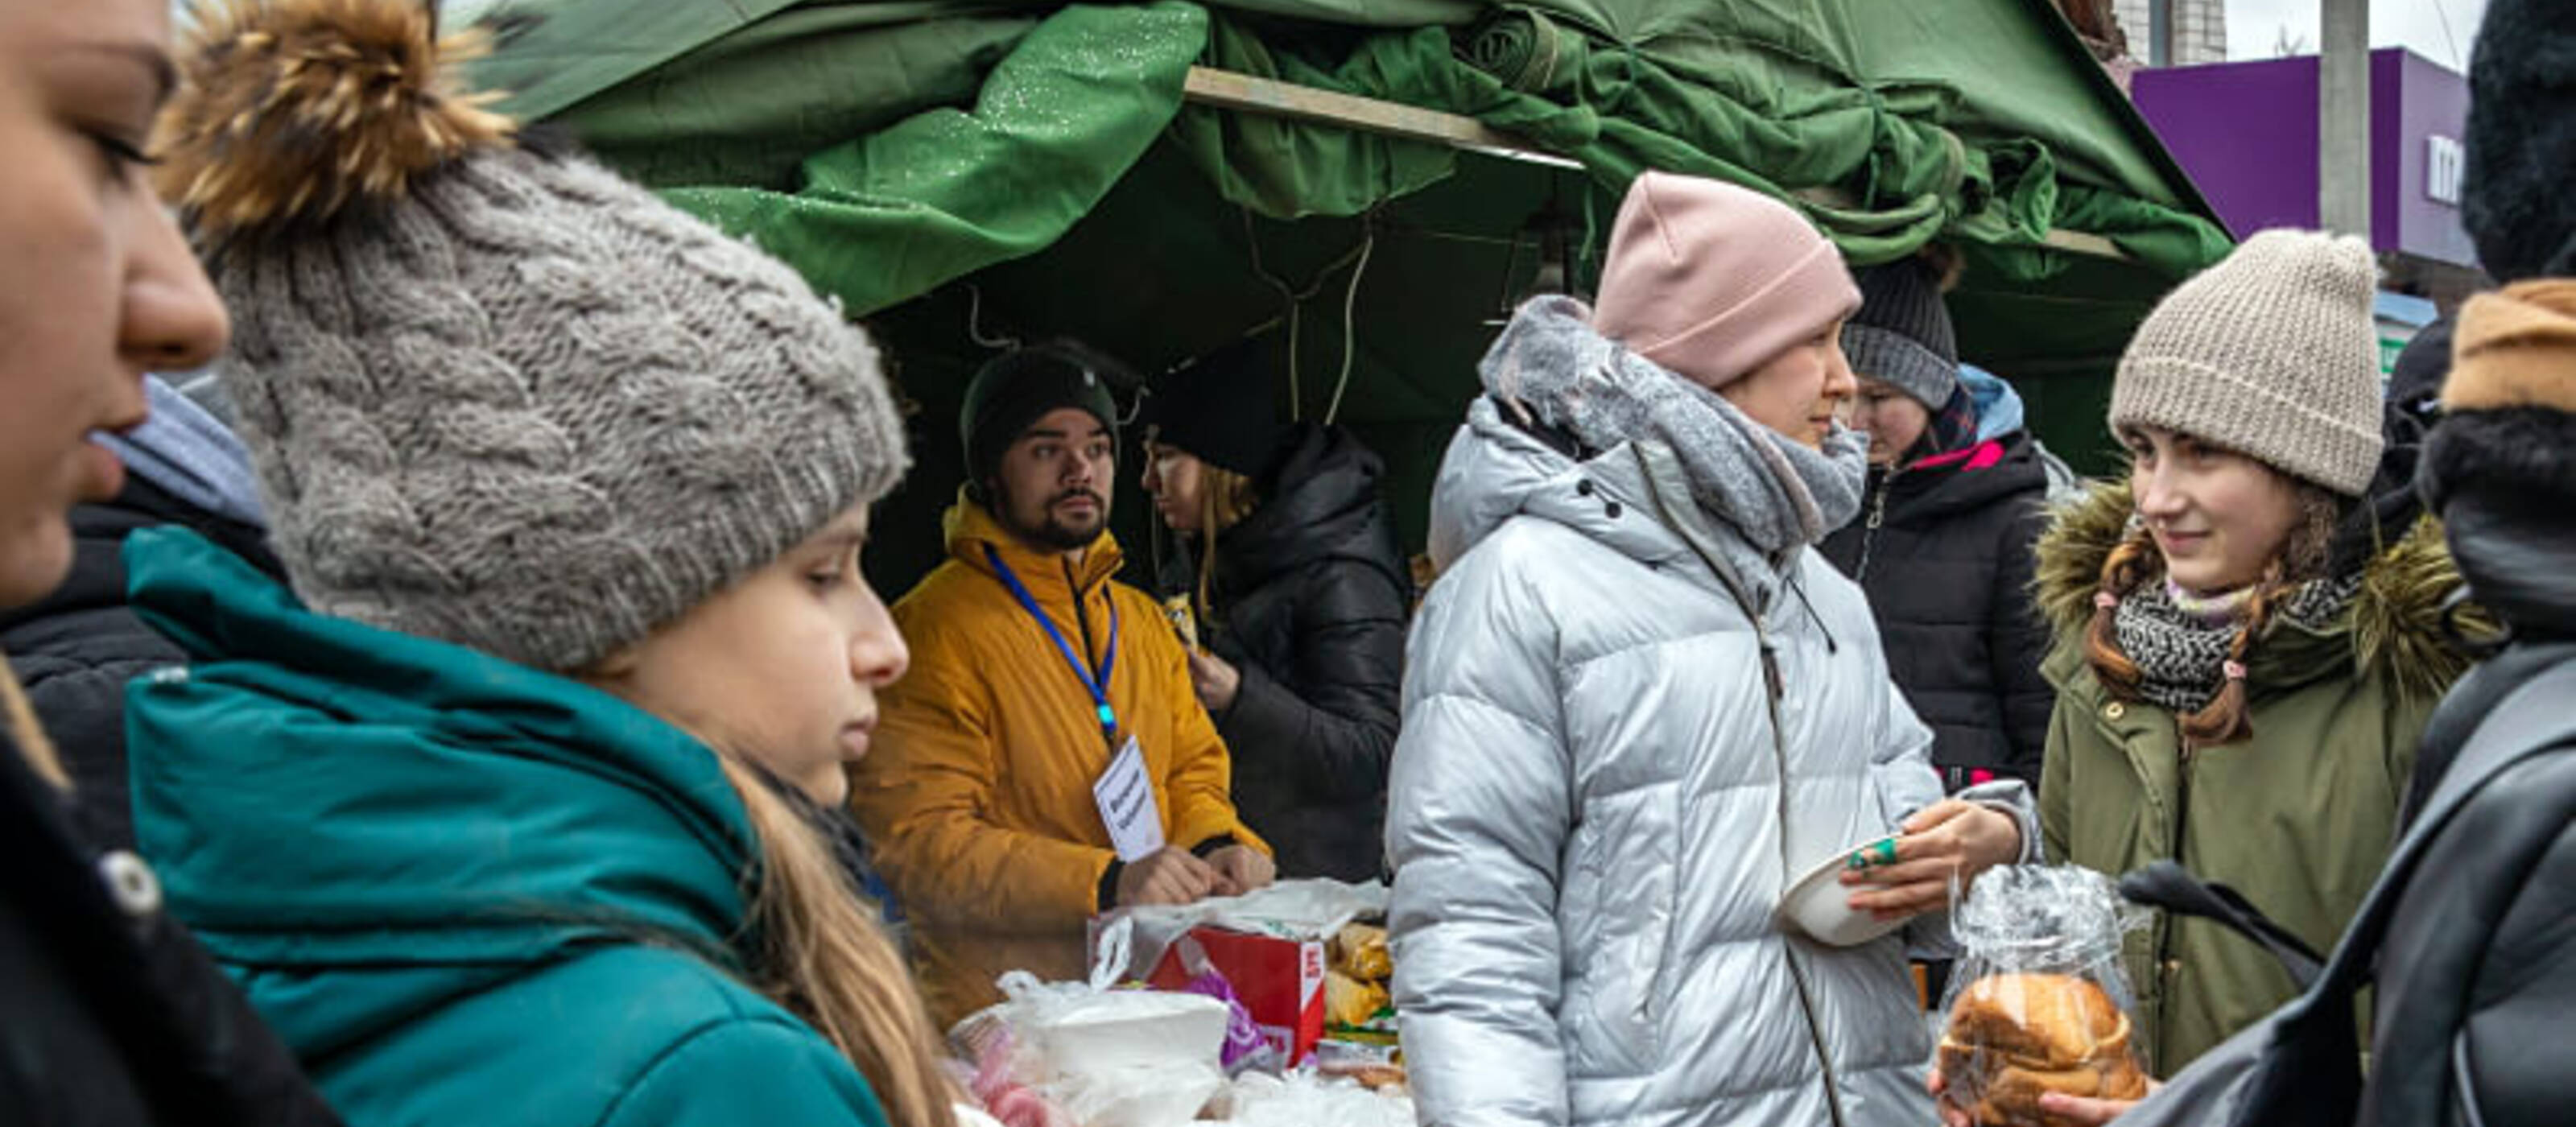 À Palanca, des milliers de réfugiés d’Ukraine traversent la frontière. Des bénévoles moldaves font tout leur possible pour fournir des biens de première nécessité aux arrivants.